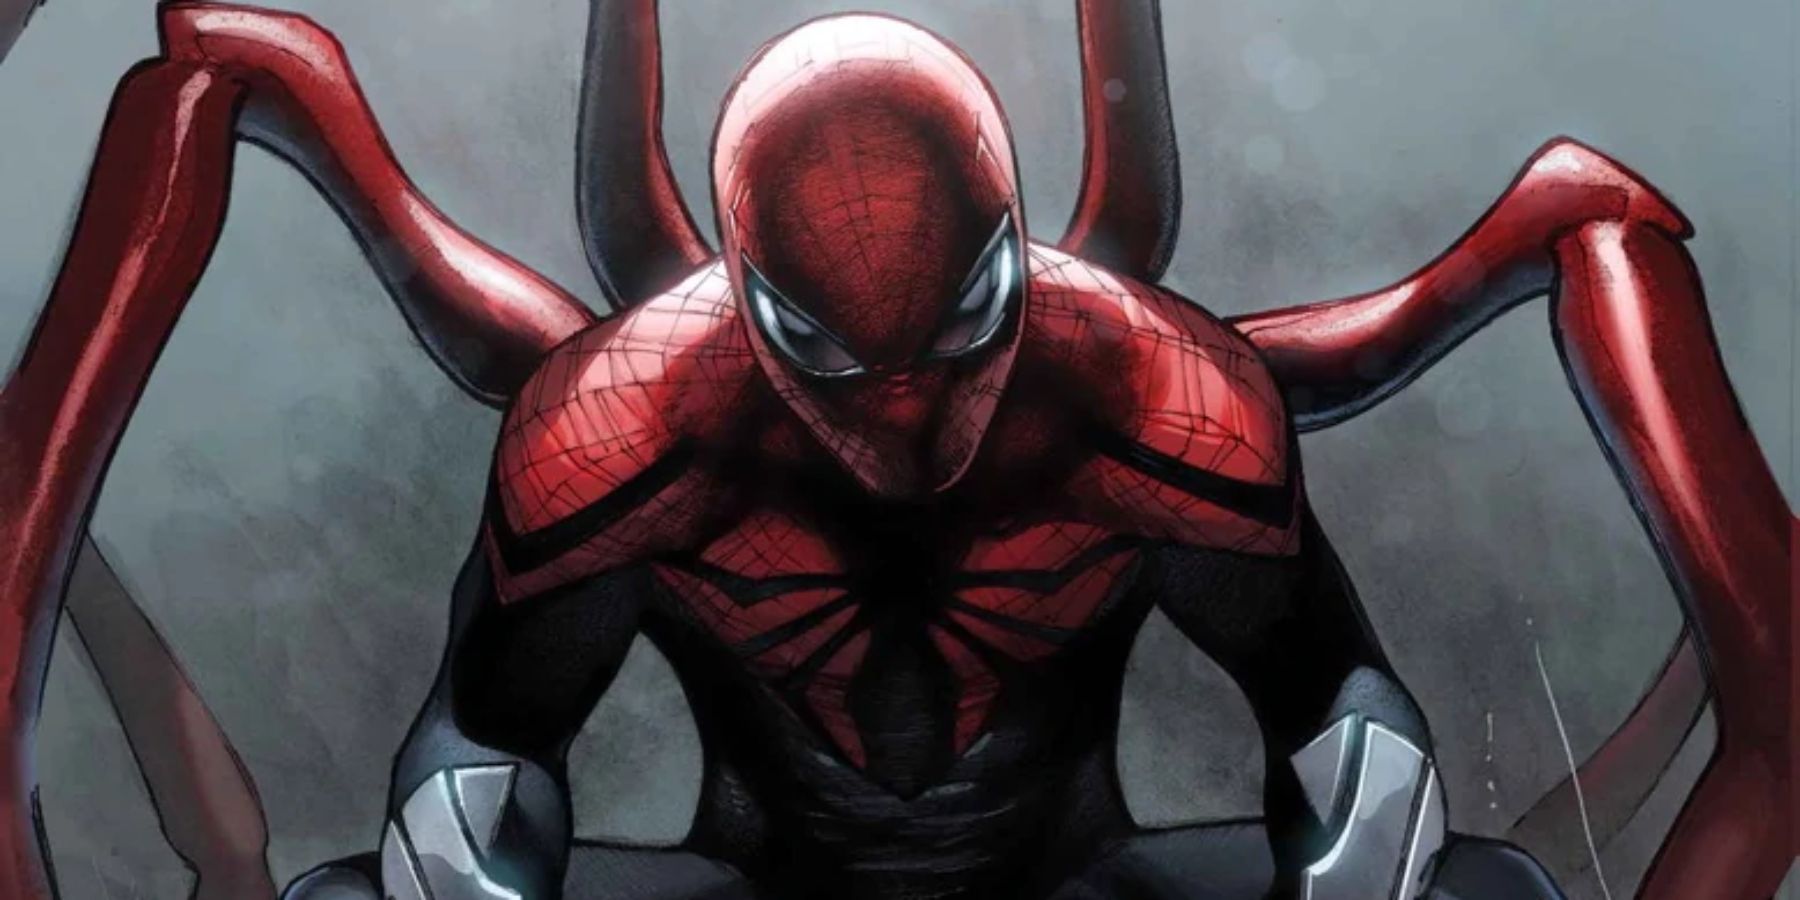 Superior-Spider-Man